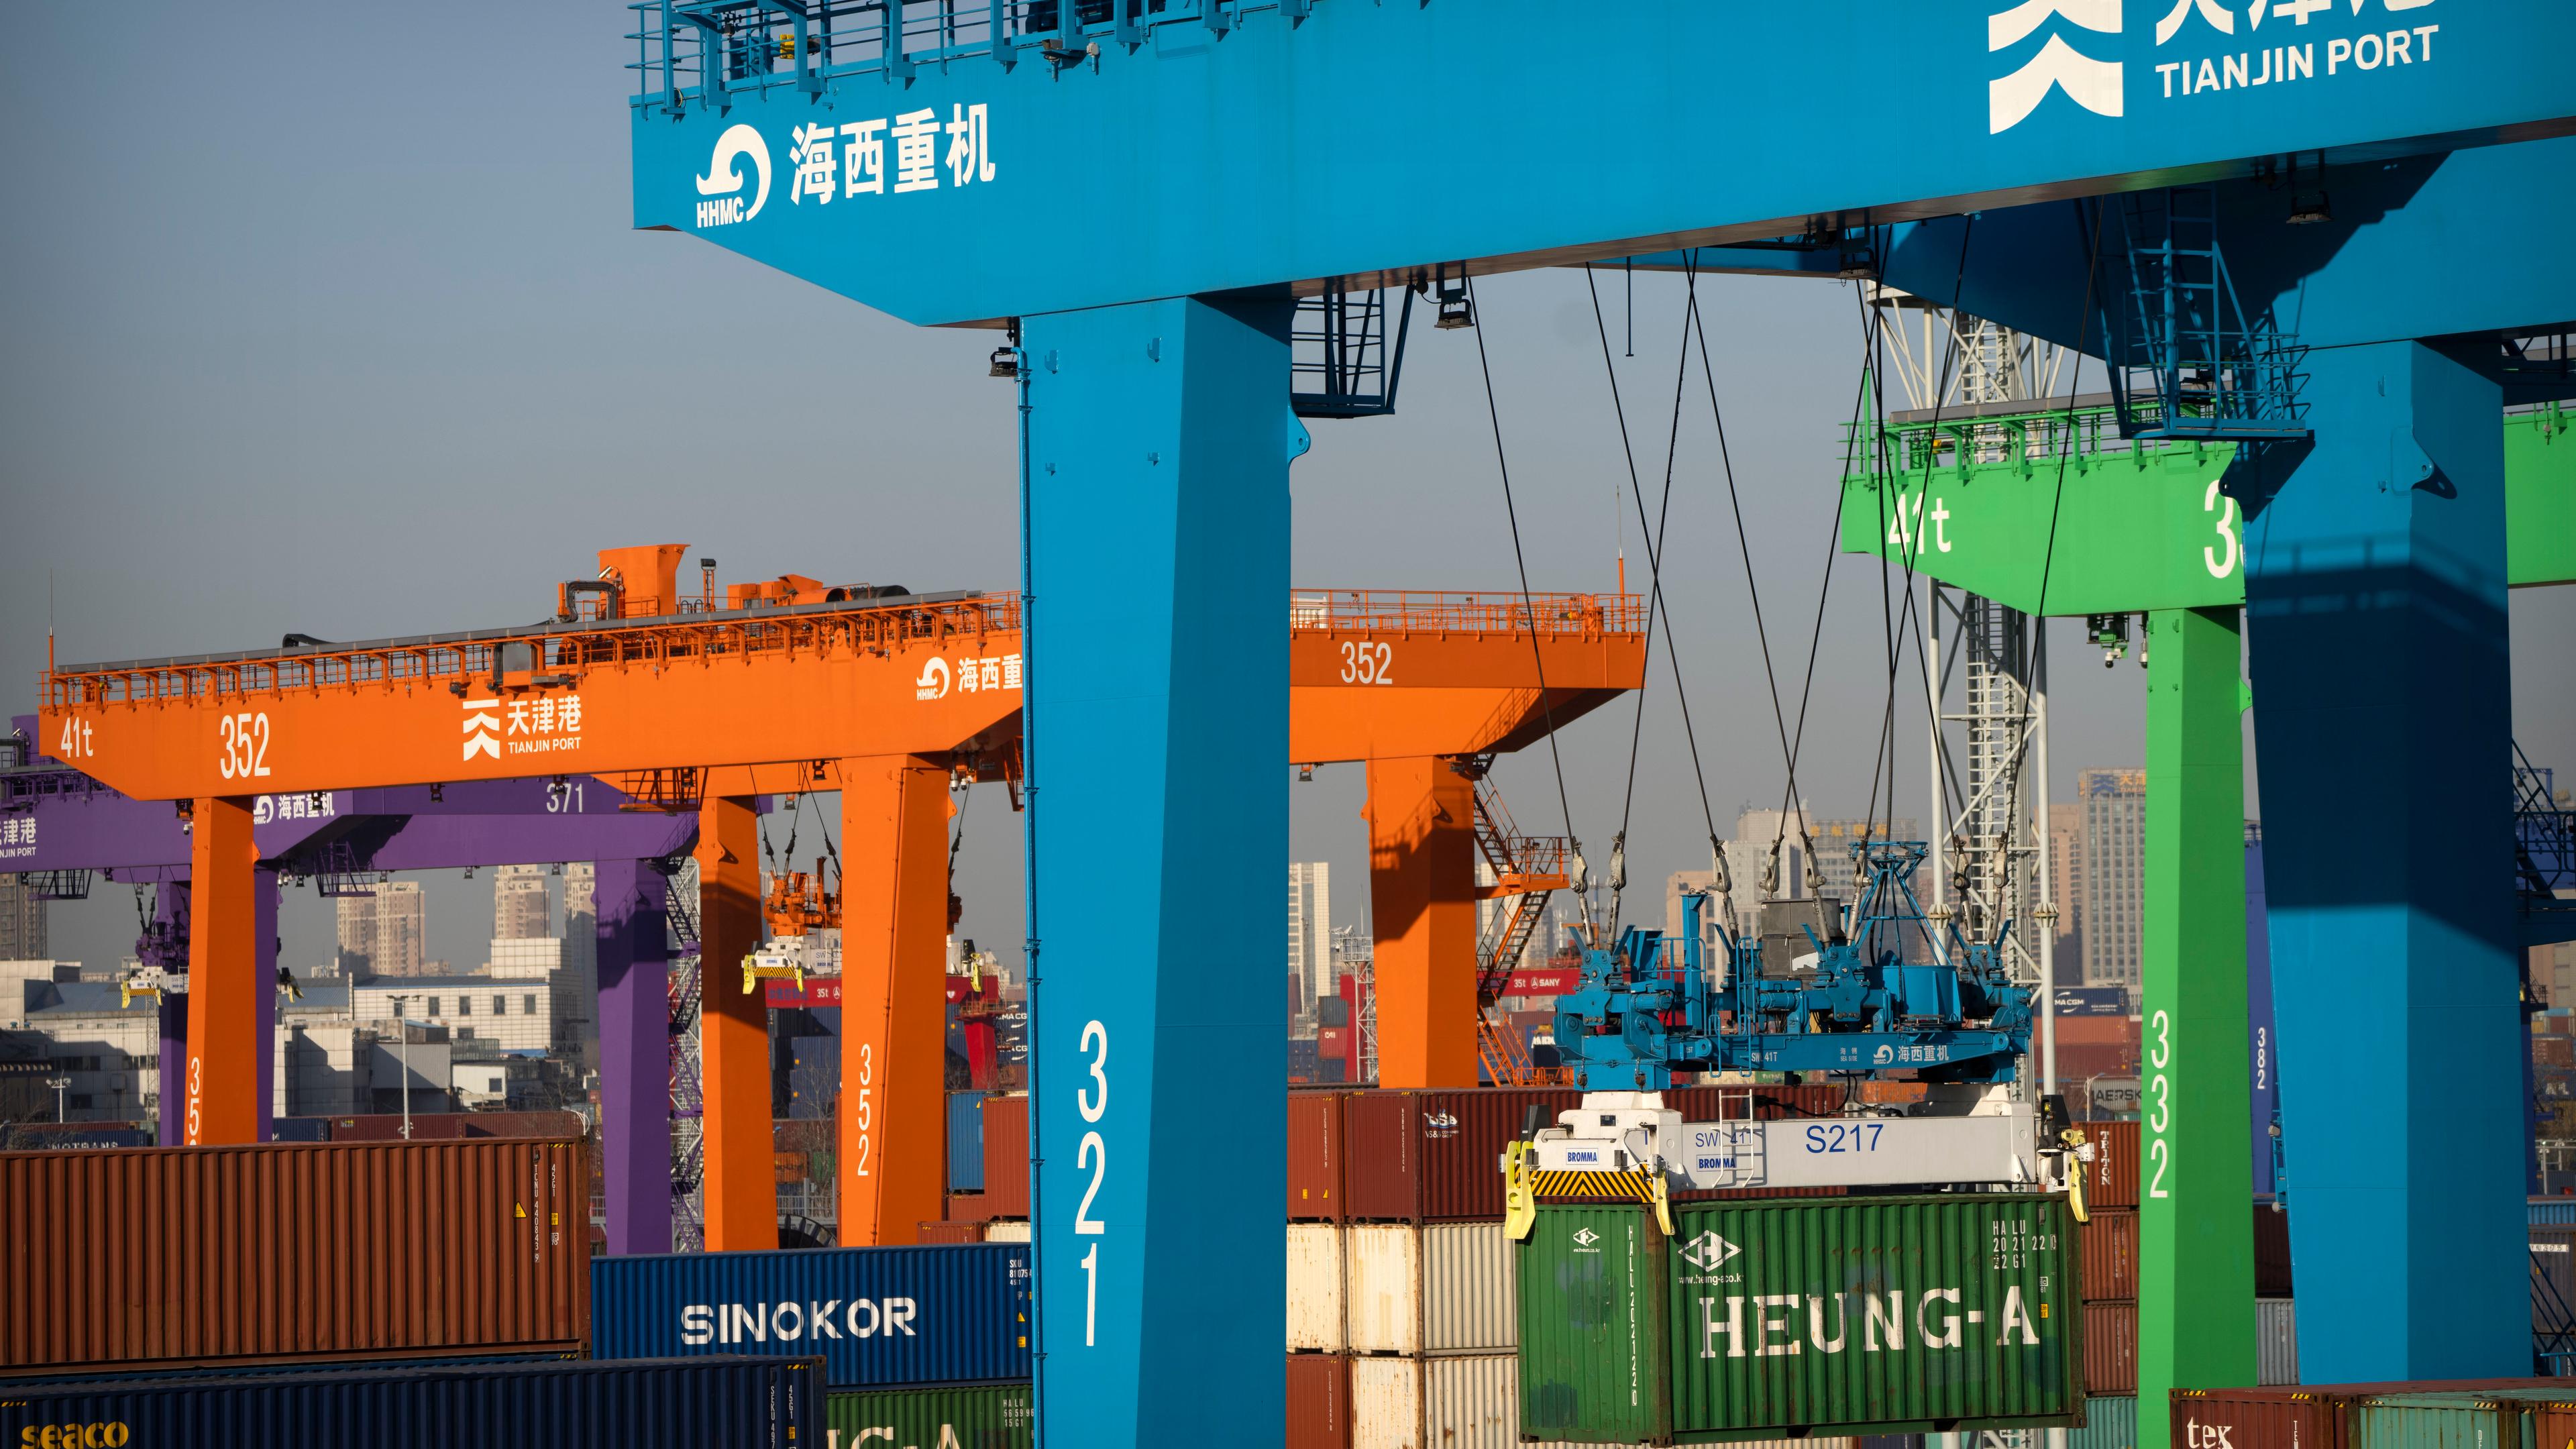 Ein Kran hebt einen Schiffscontainer in einem automatisierten Containerhafen in Tianjin